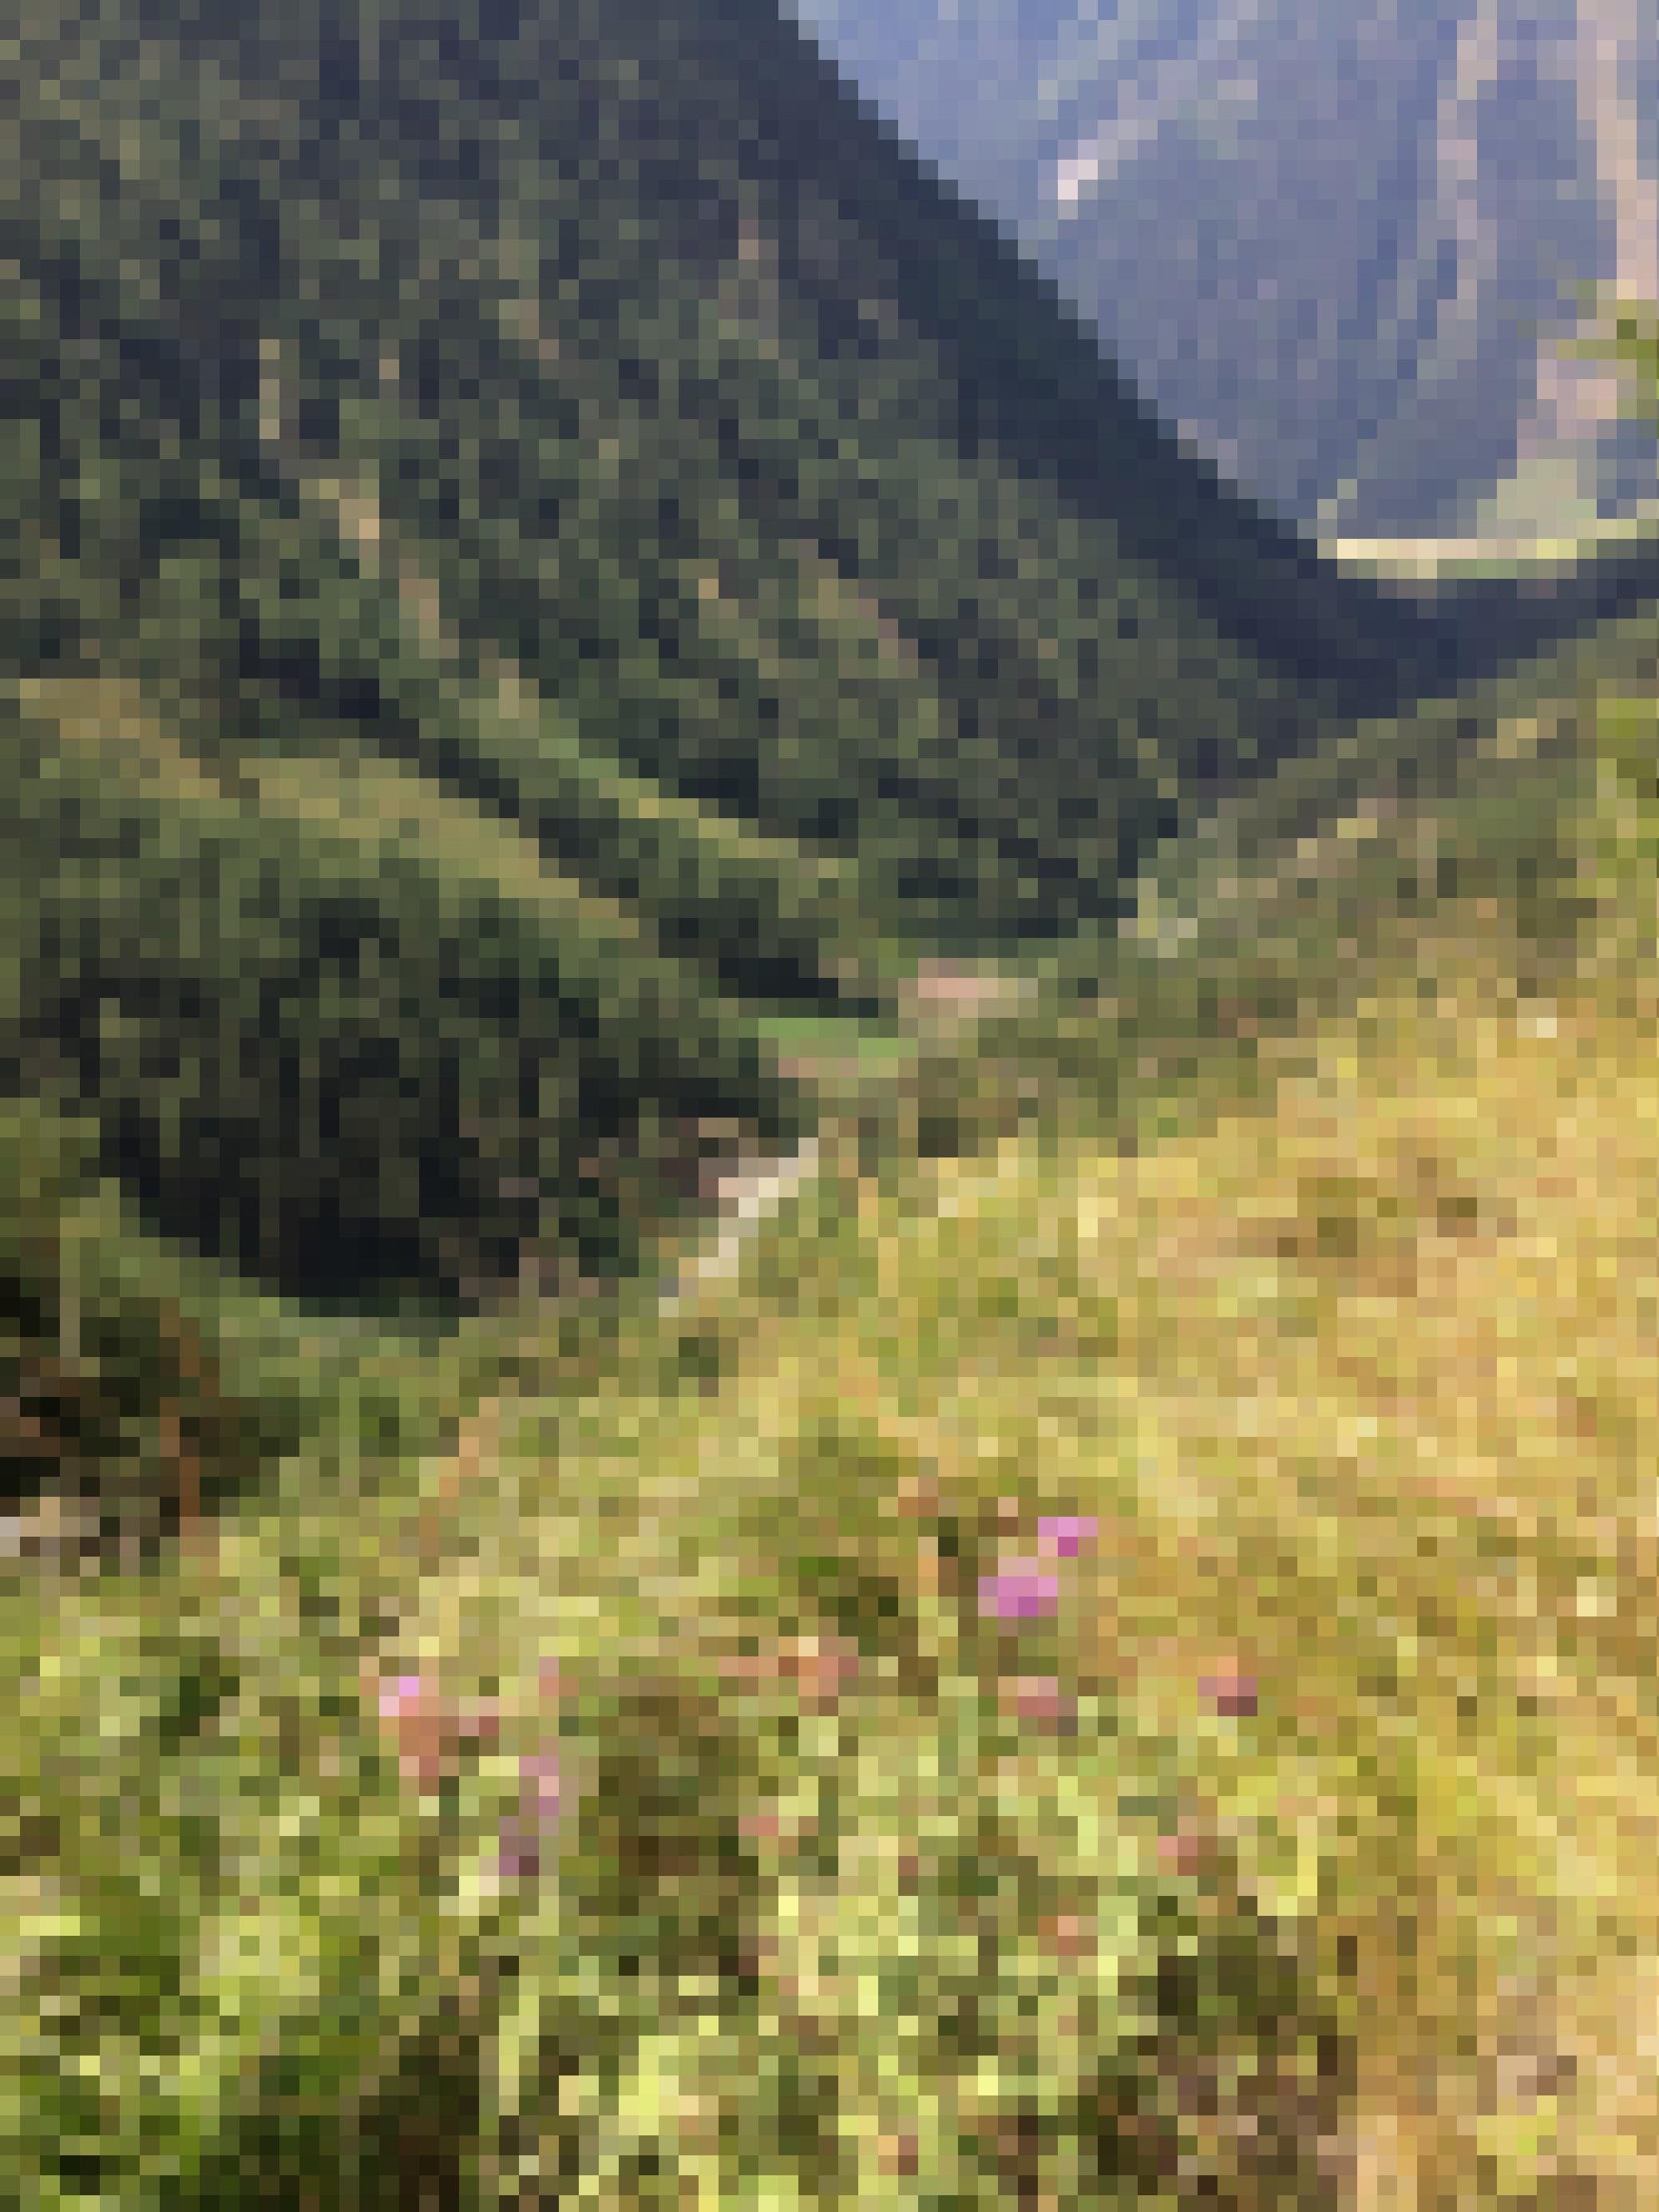 Steiles Gebirgstal vom Hang weit oben fotografiert.